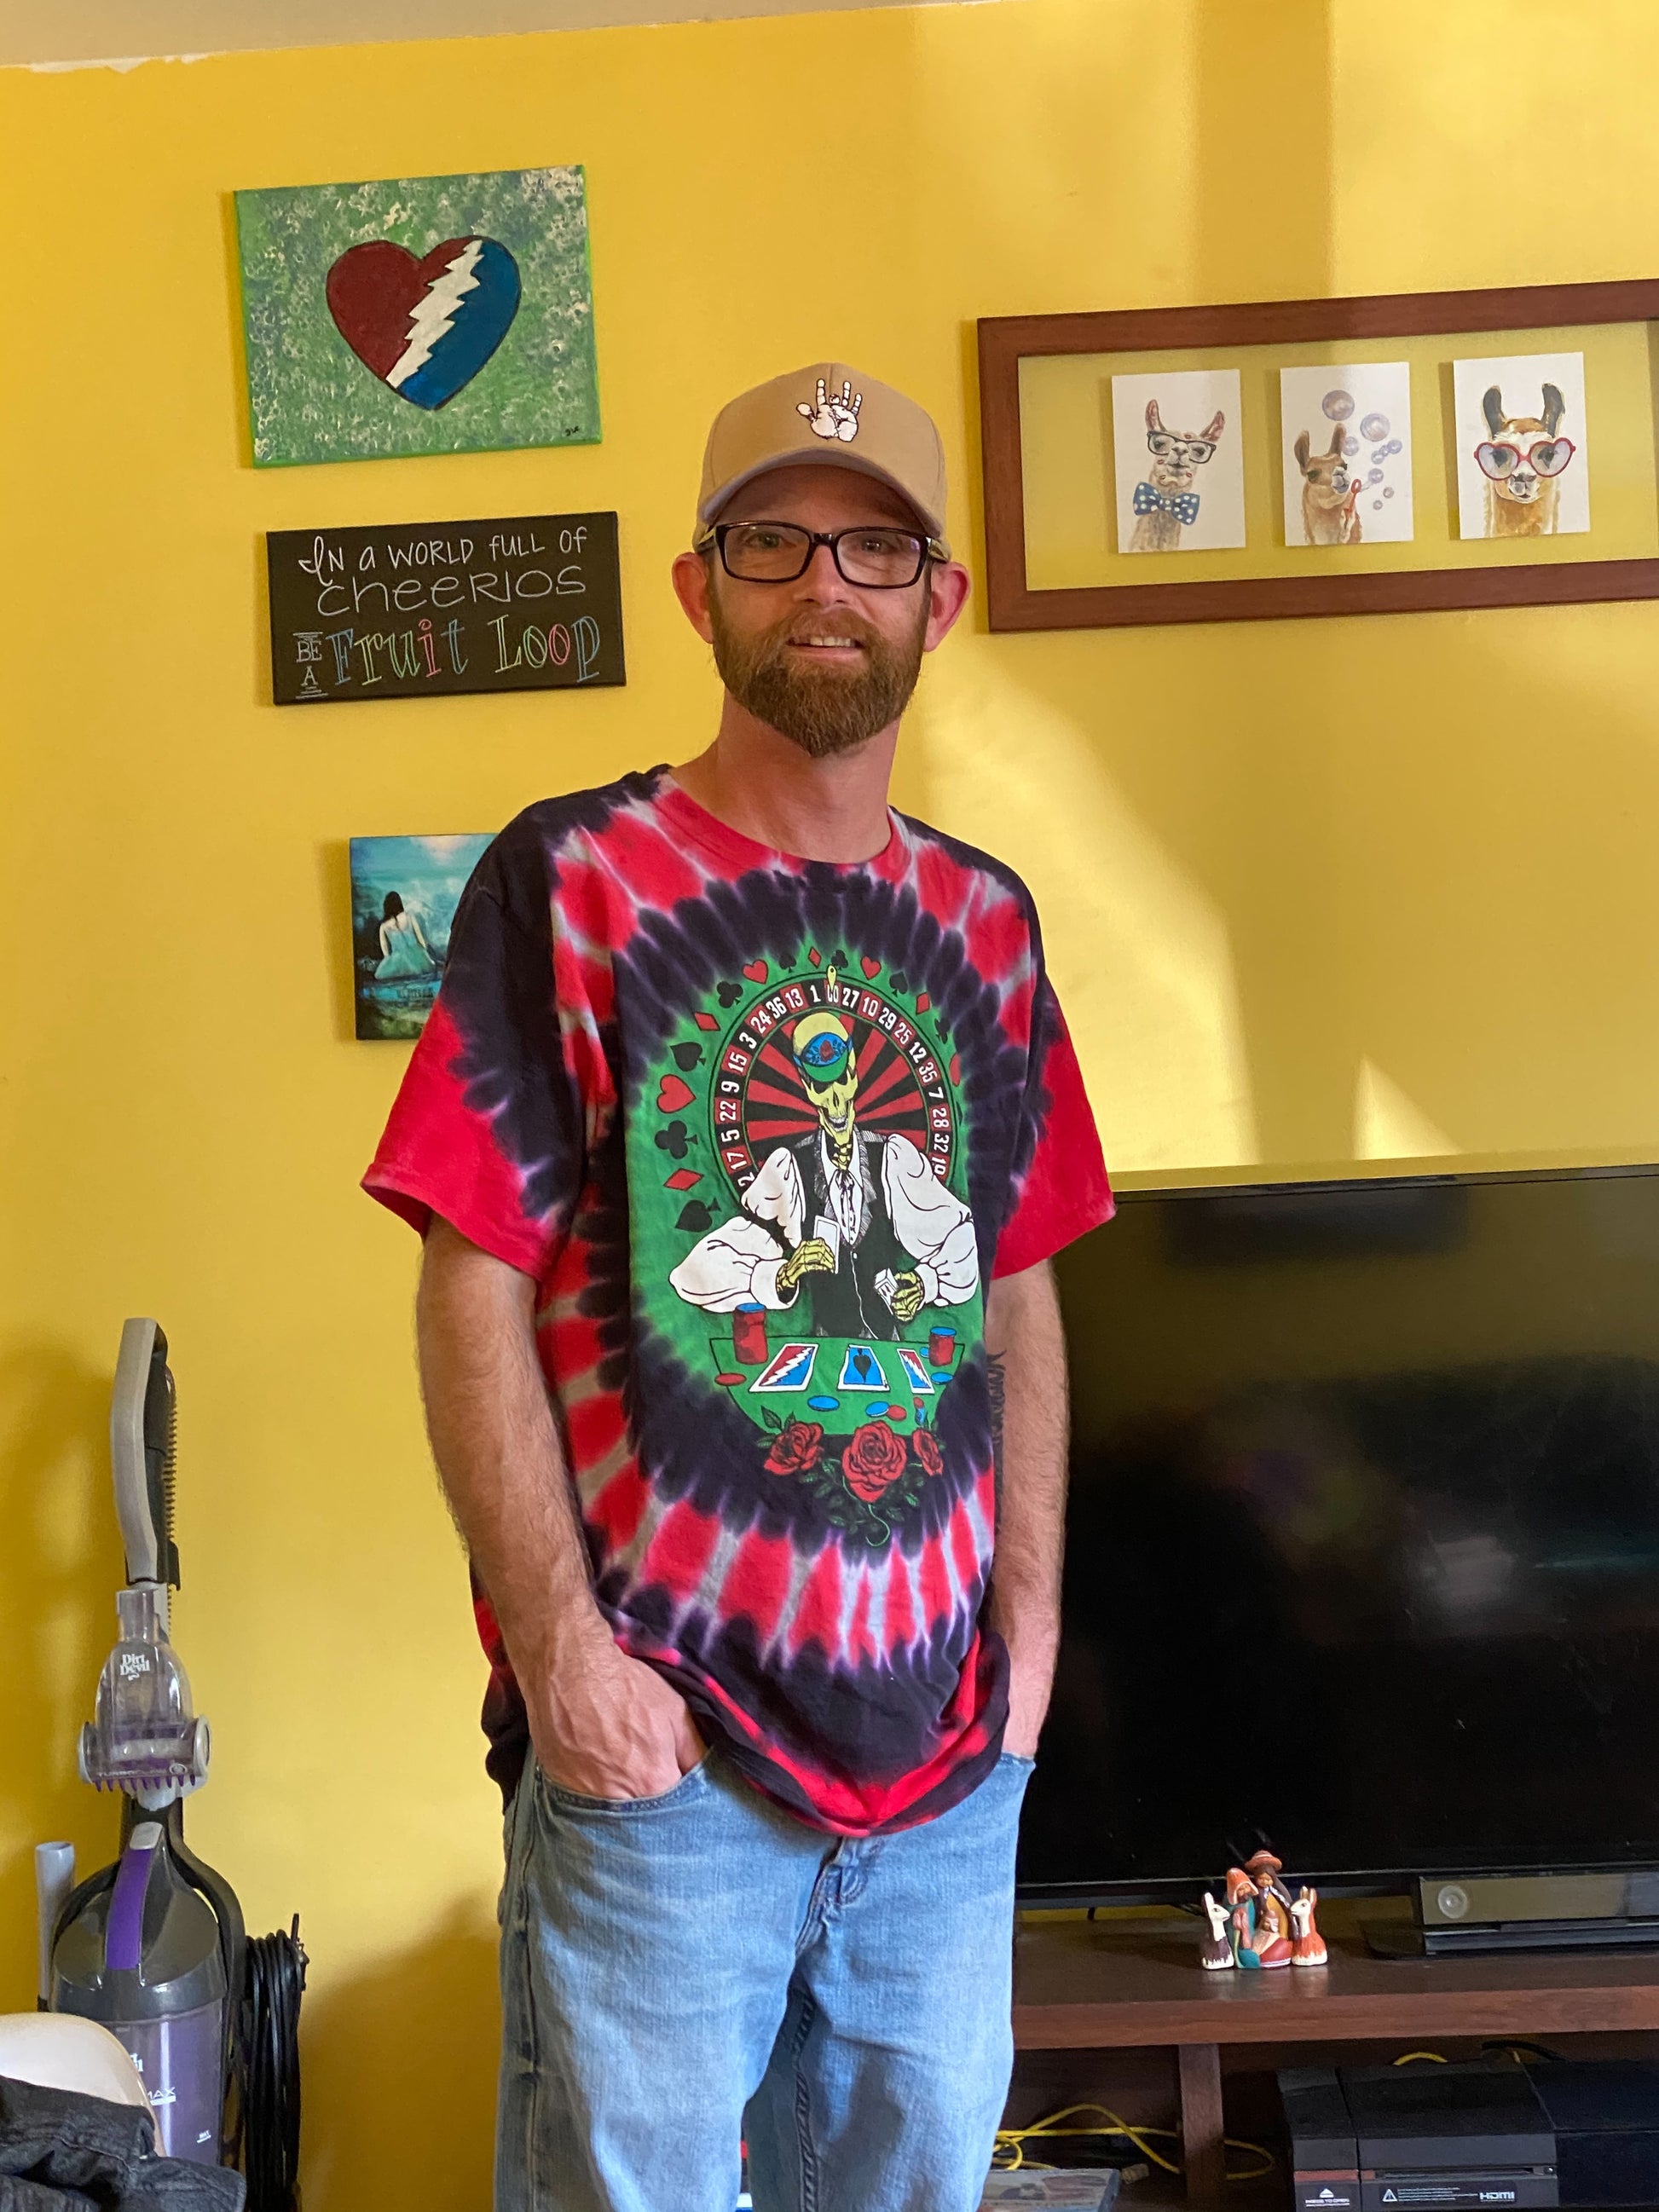 Grateful Dead Dealer tie dye t-shirt - eDeadShop